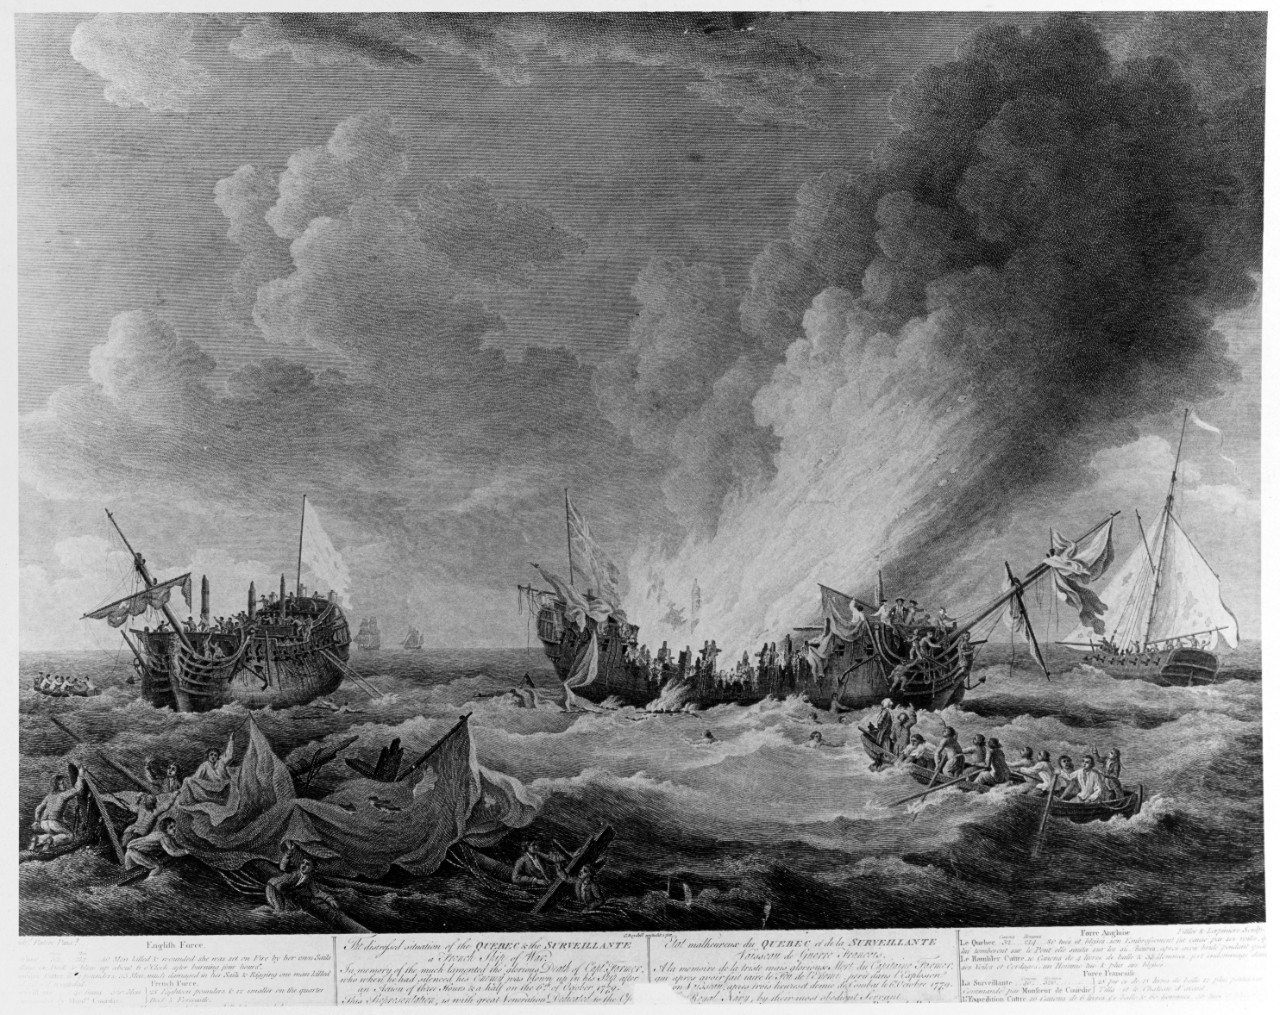 HMS QUEBEC vs. la SURVEILLANTE, 6 October 1779.